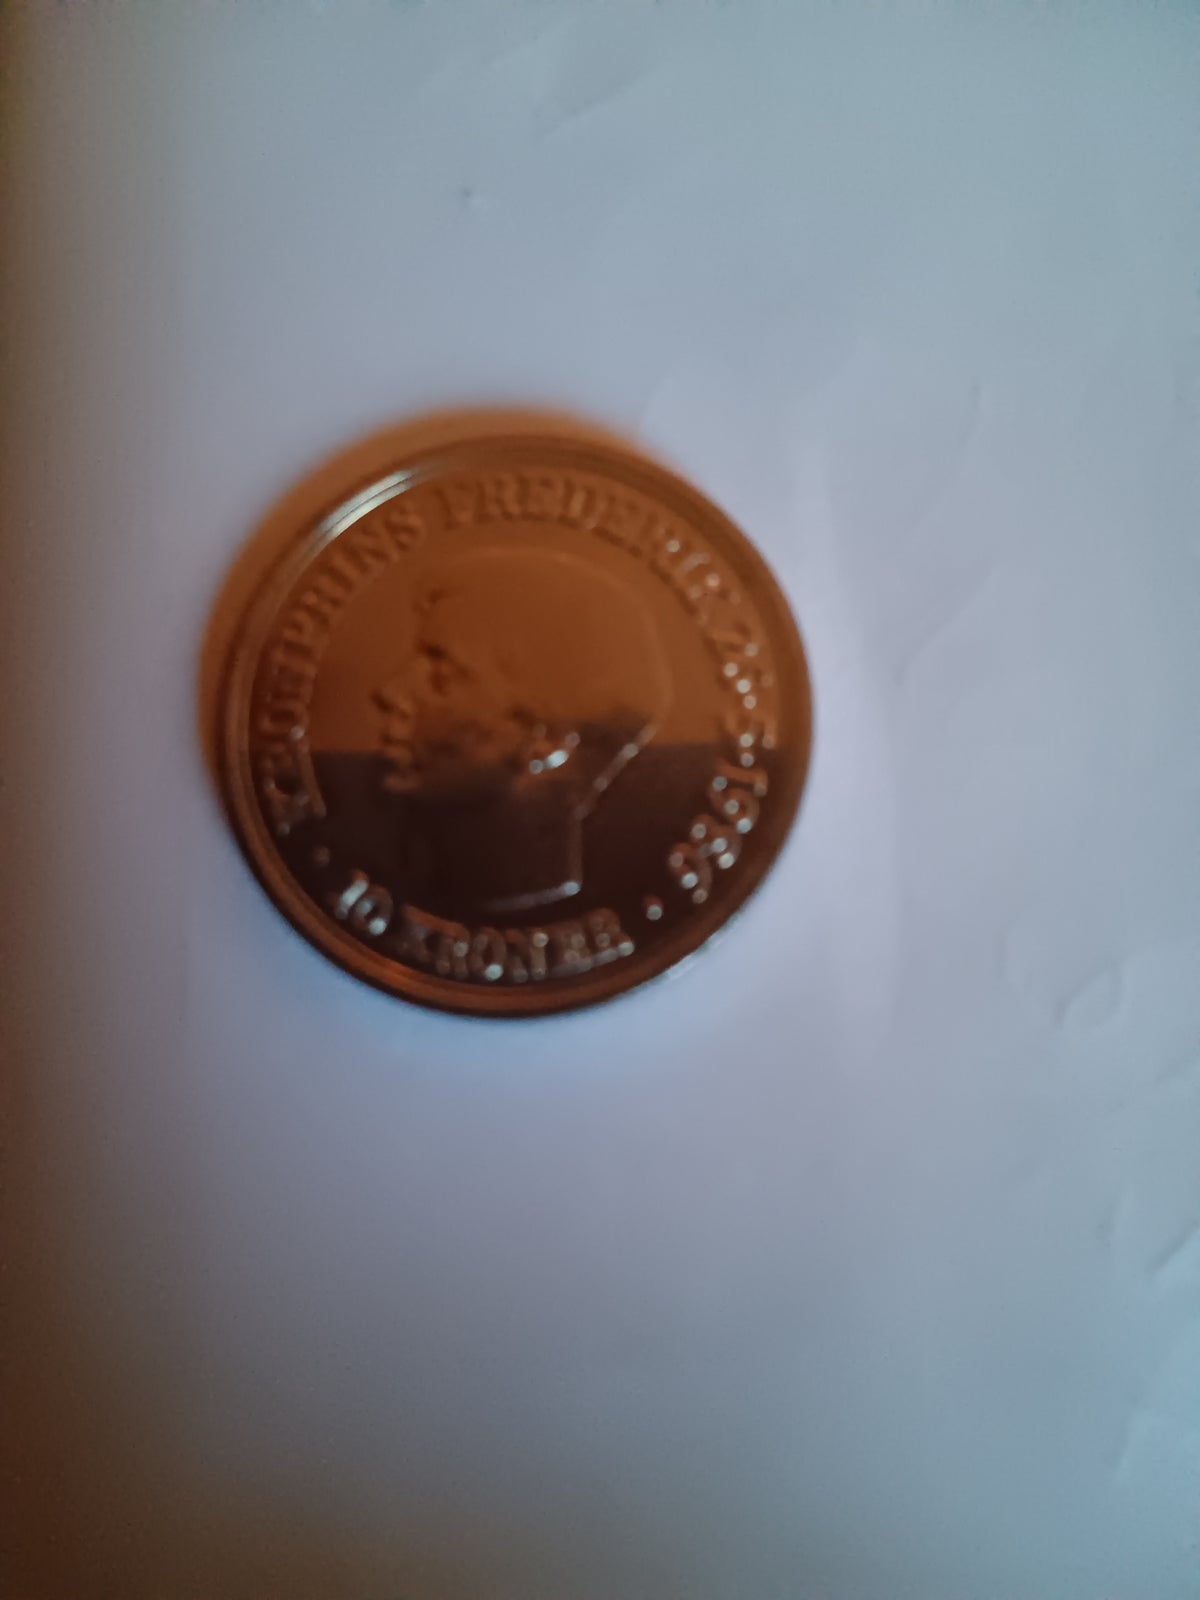 Danmark, mønter, 10